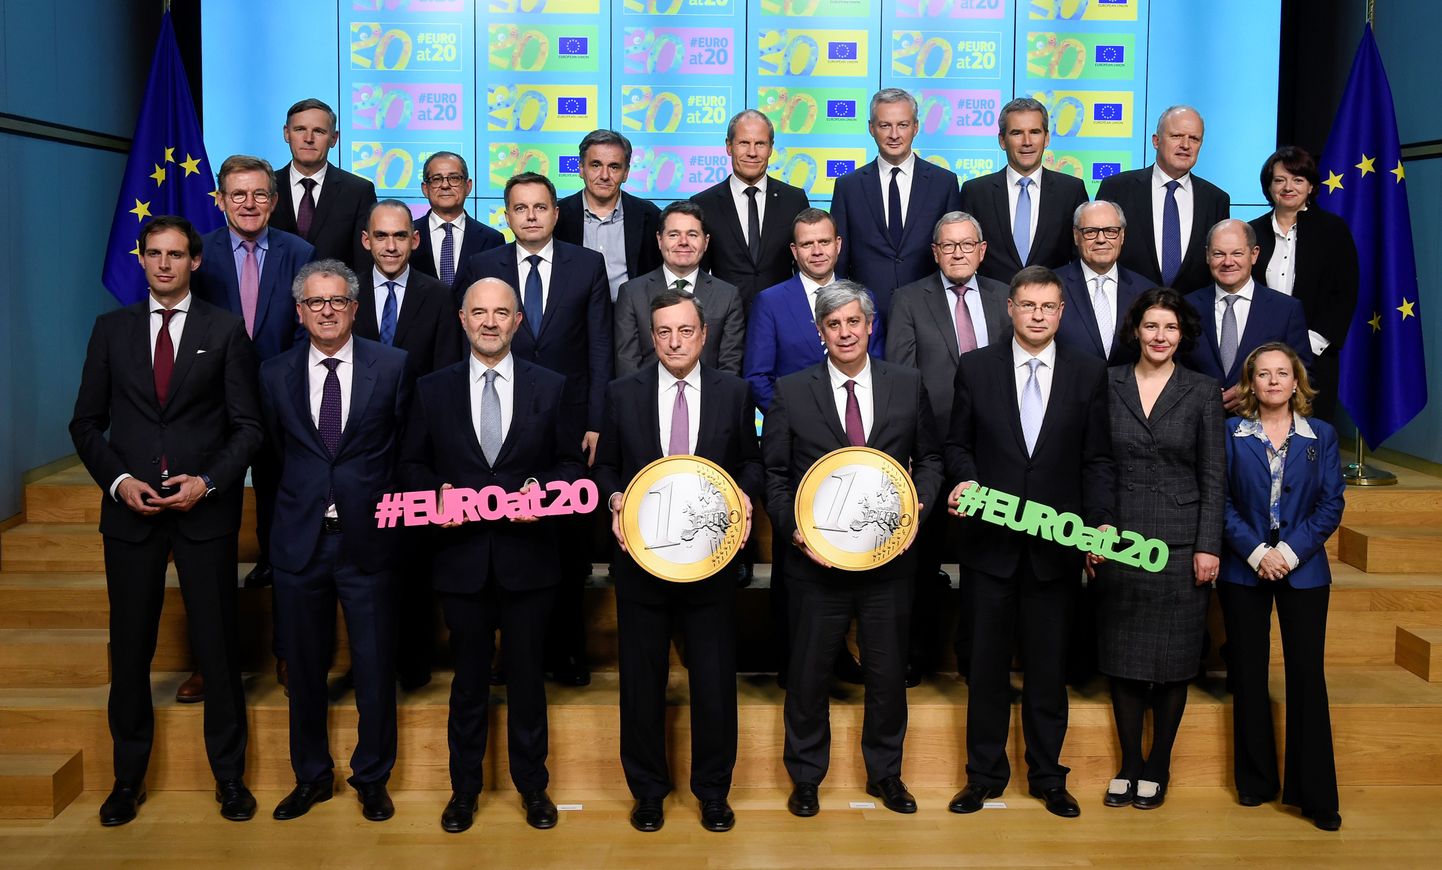 Представители стран еврозоны достигли соглашения о реформе европейского валютного союза.